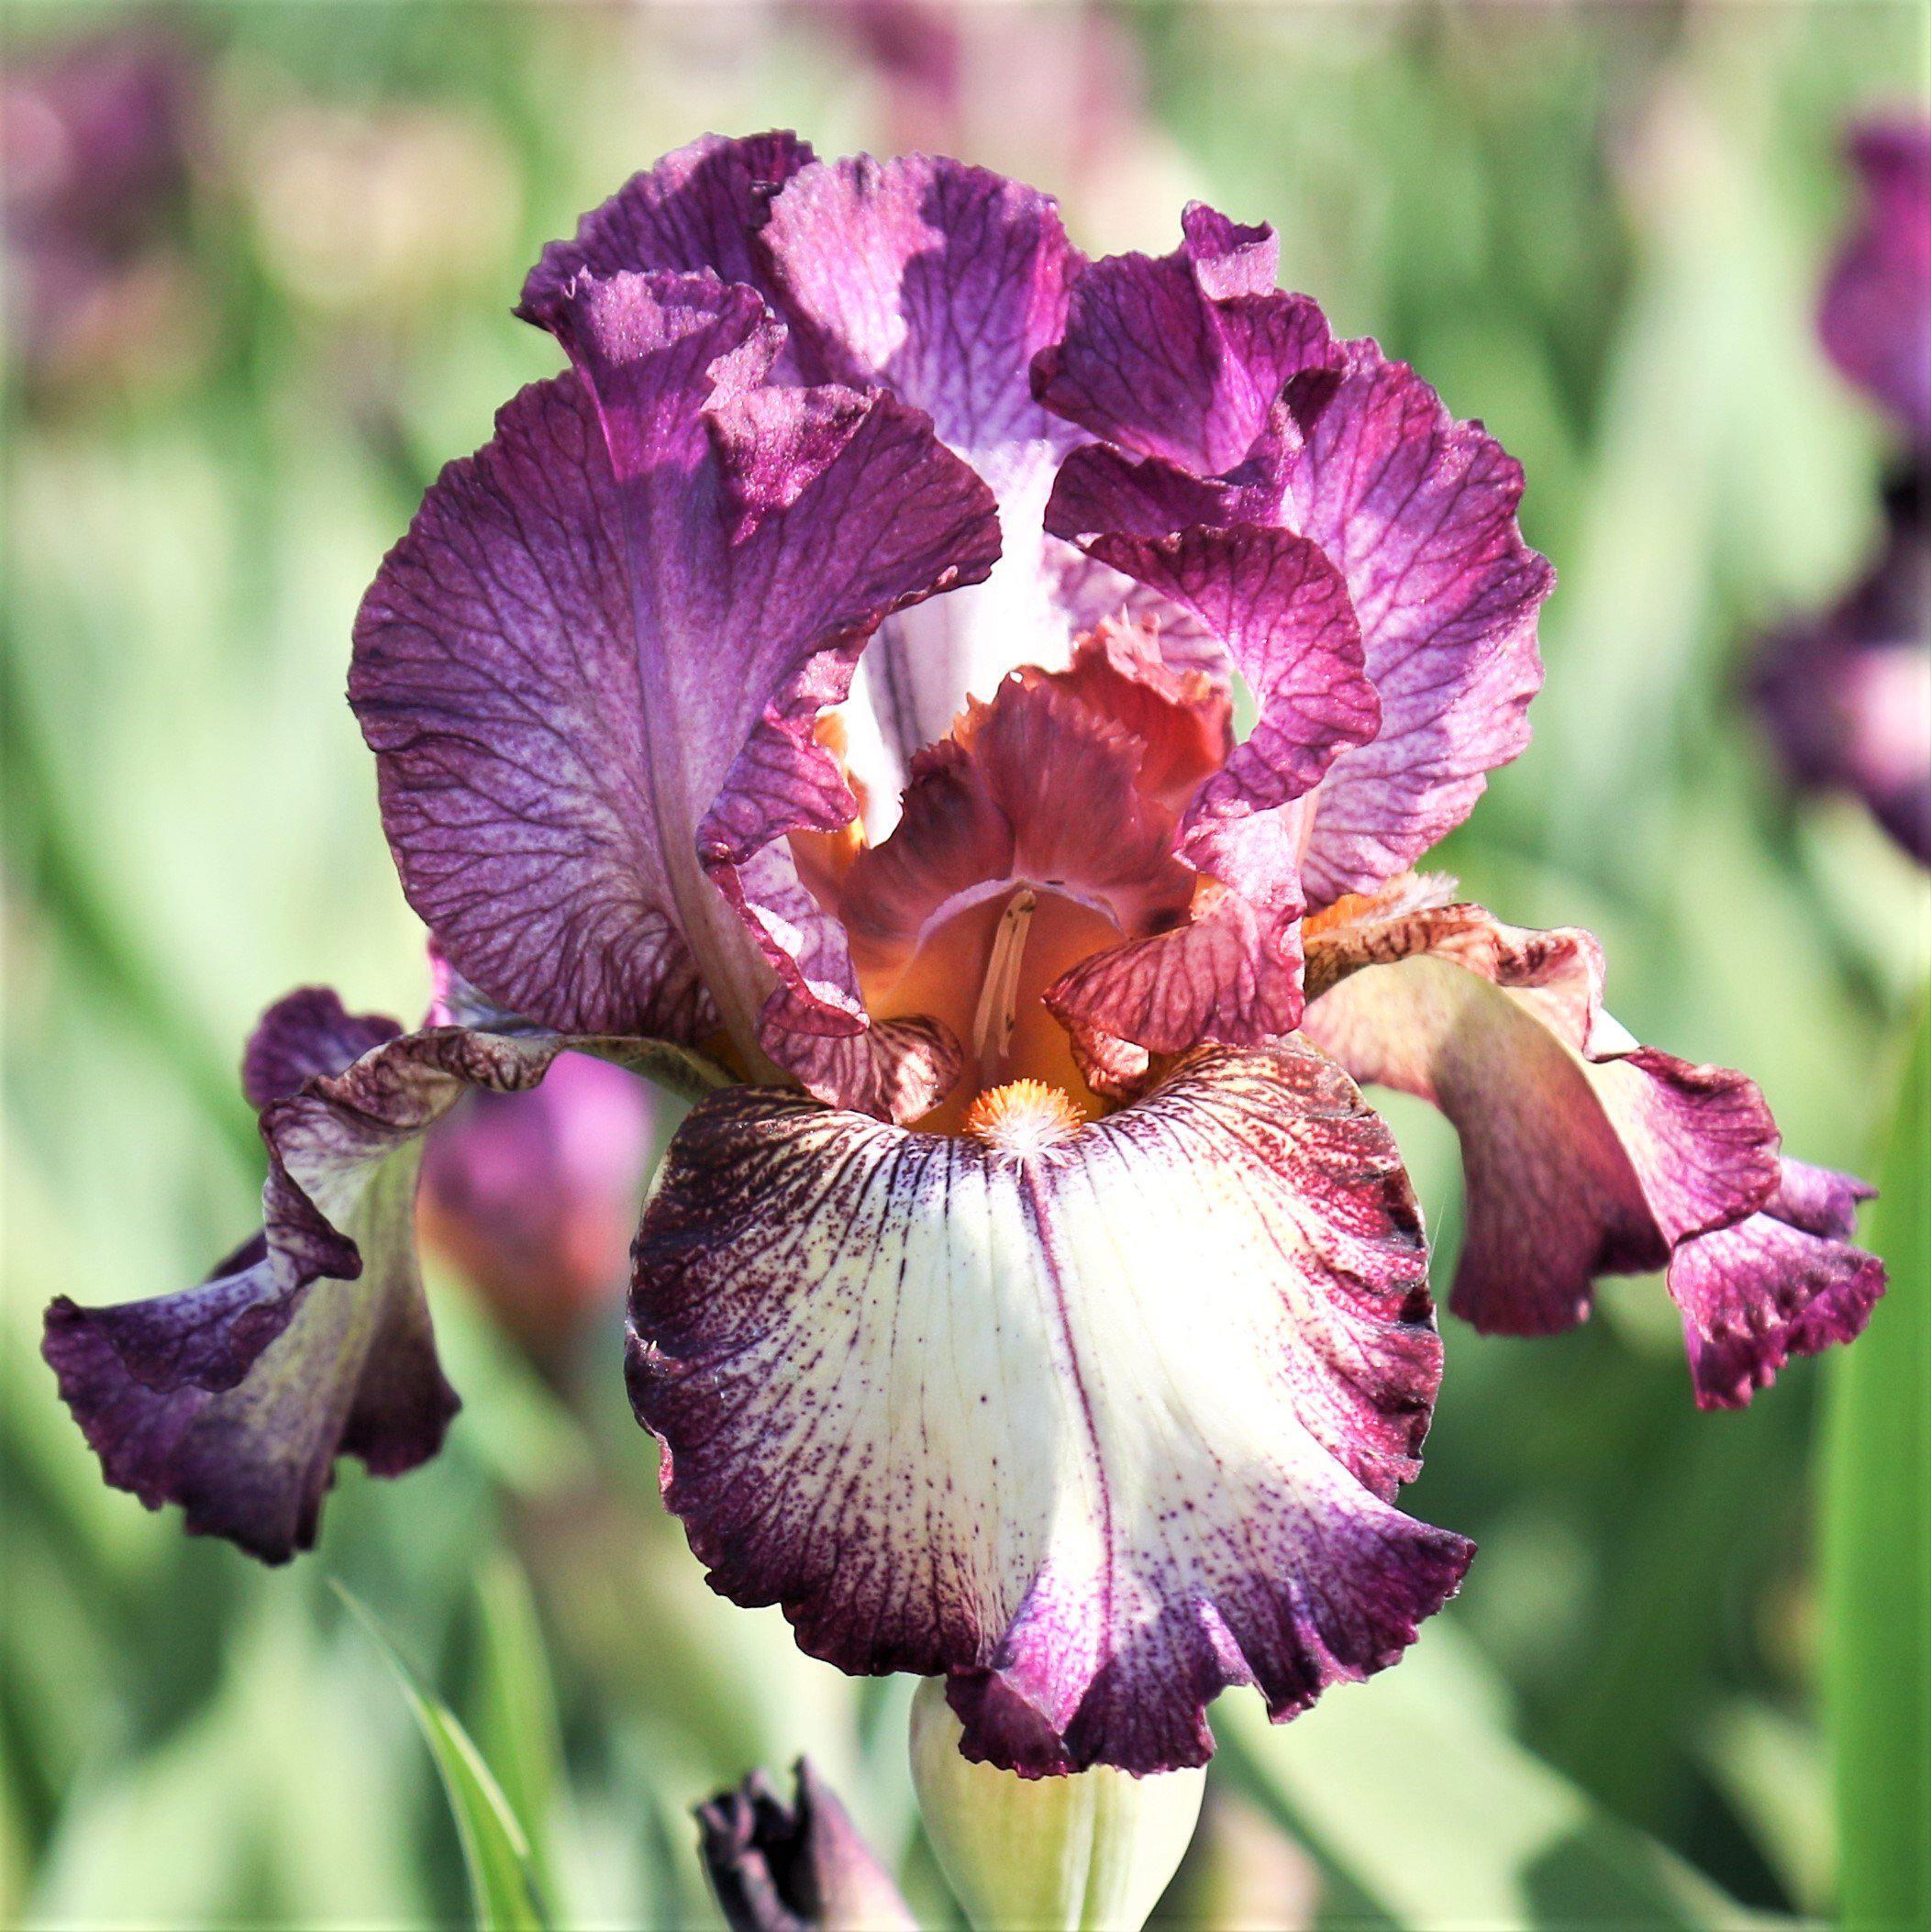 Delightfully Fragrant Bearded Irises